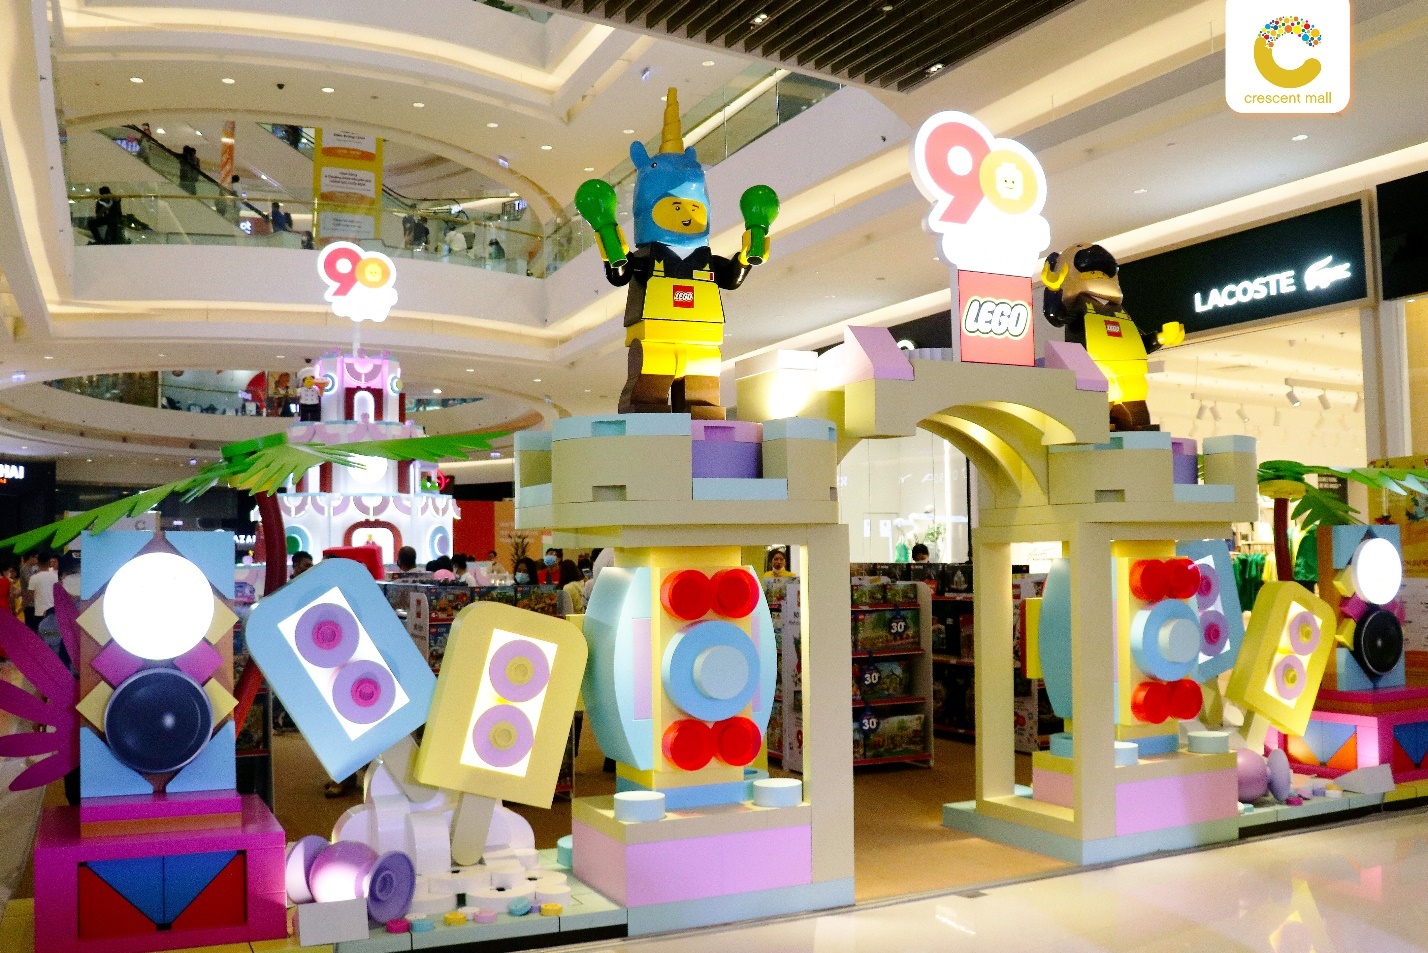 Tháng 6 này, cùng bước vào hành trình sáng tạo - khuấy đảo ngày hè tại Crescent Mall kỷ niệm 90 năm sinh nhật LEGO - Ảnh 5.